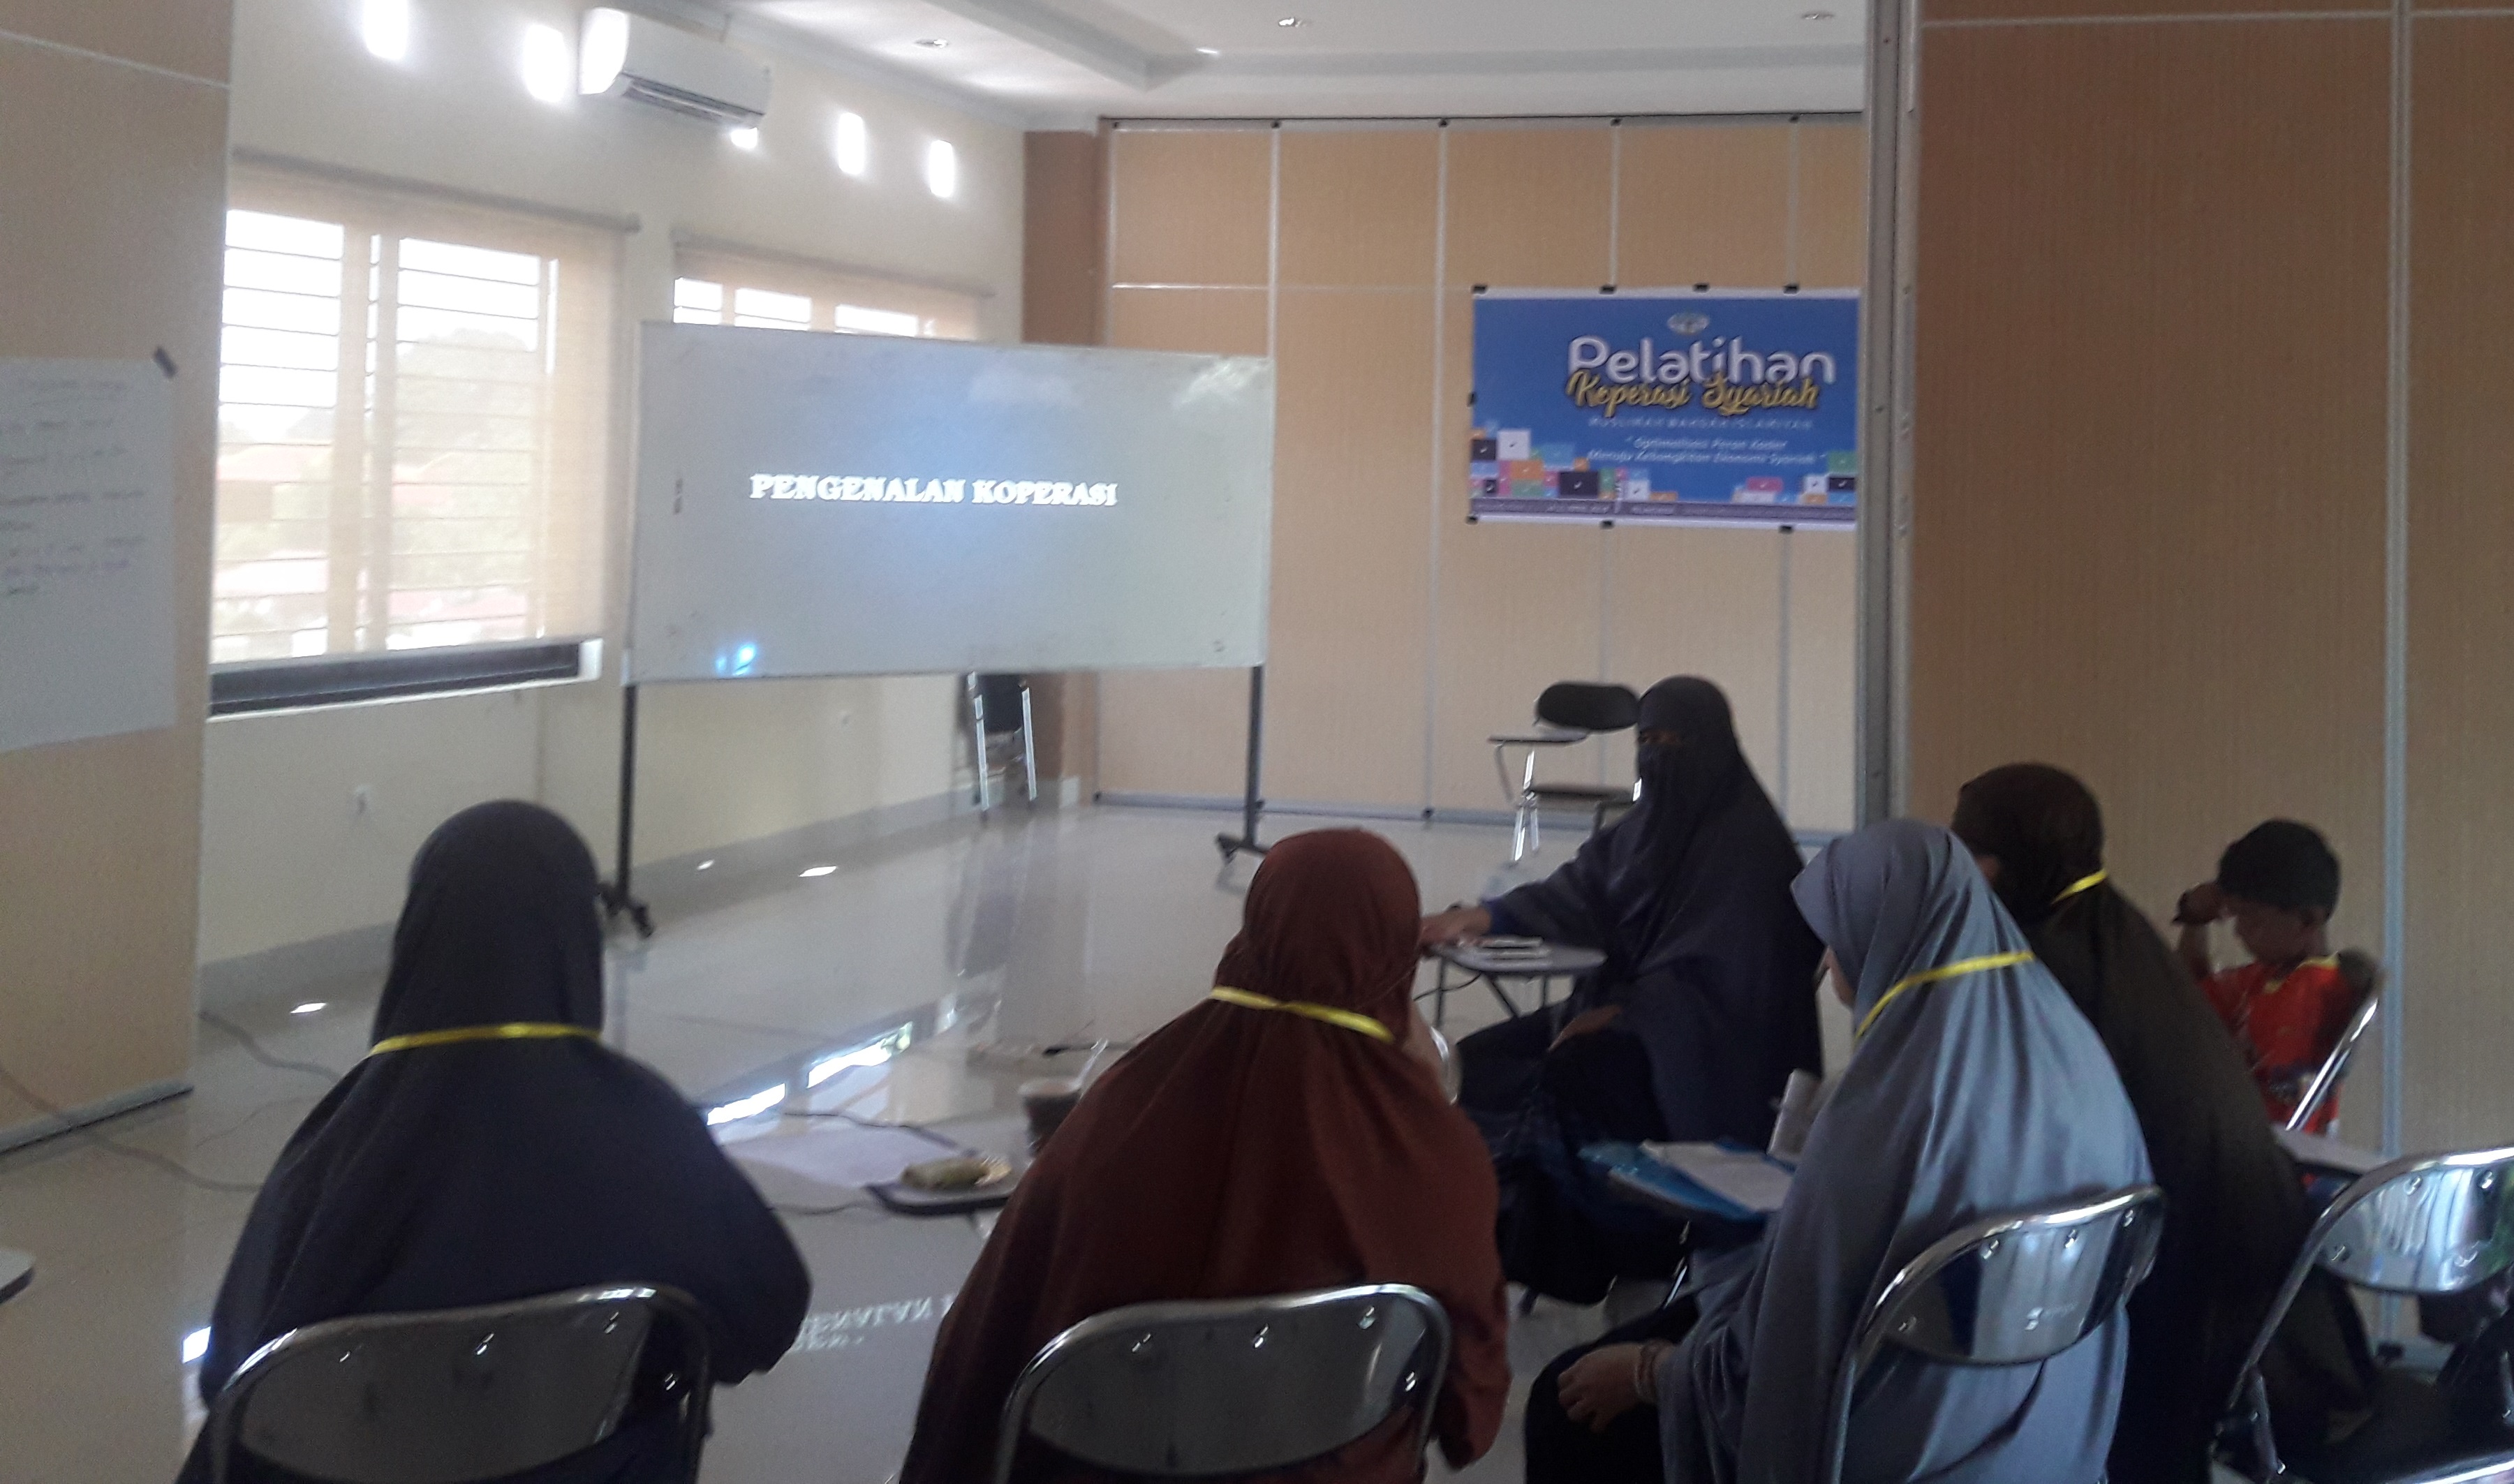 Pelatihan koperasi Syari’ah Muslimah Wahdah Islamiyah